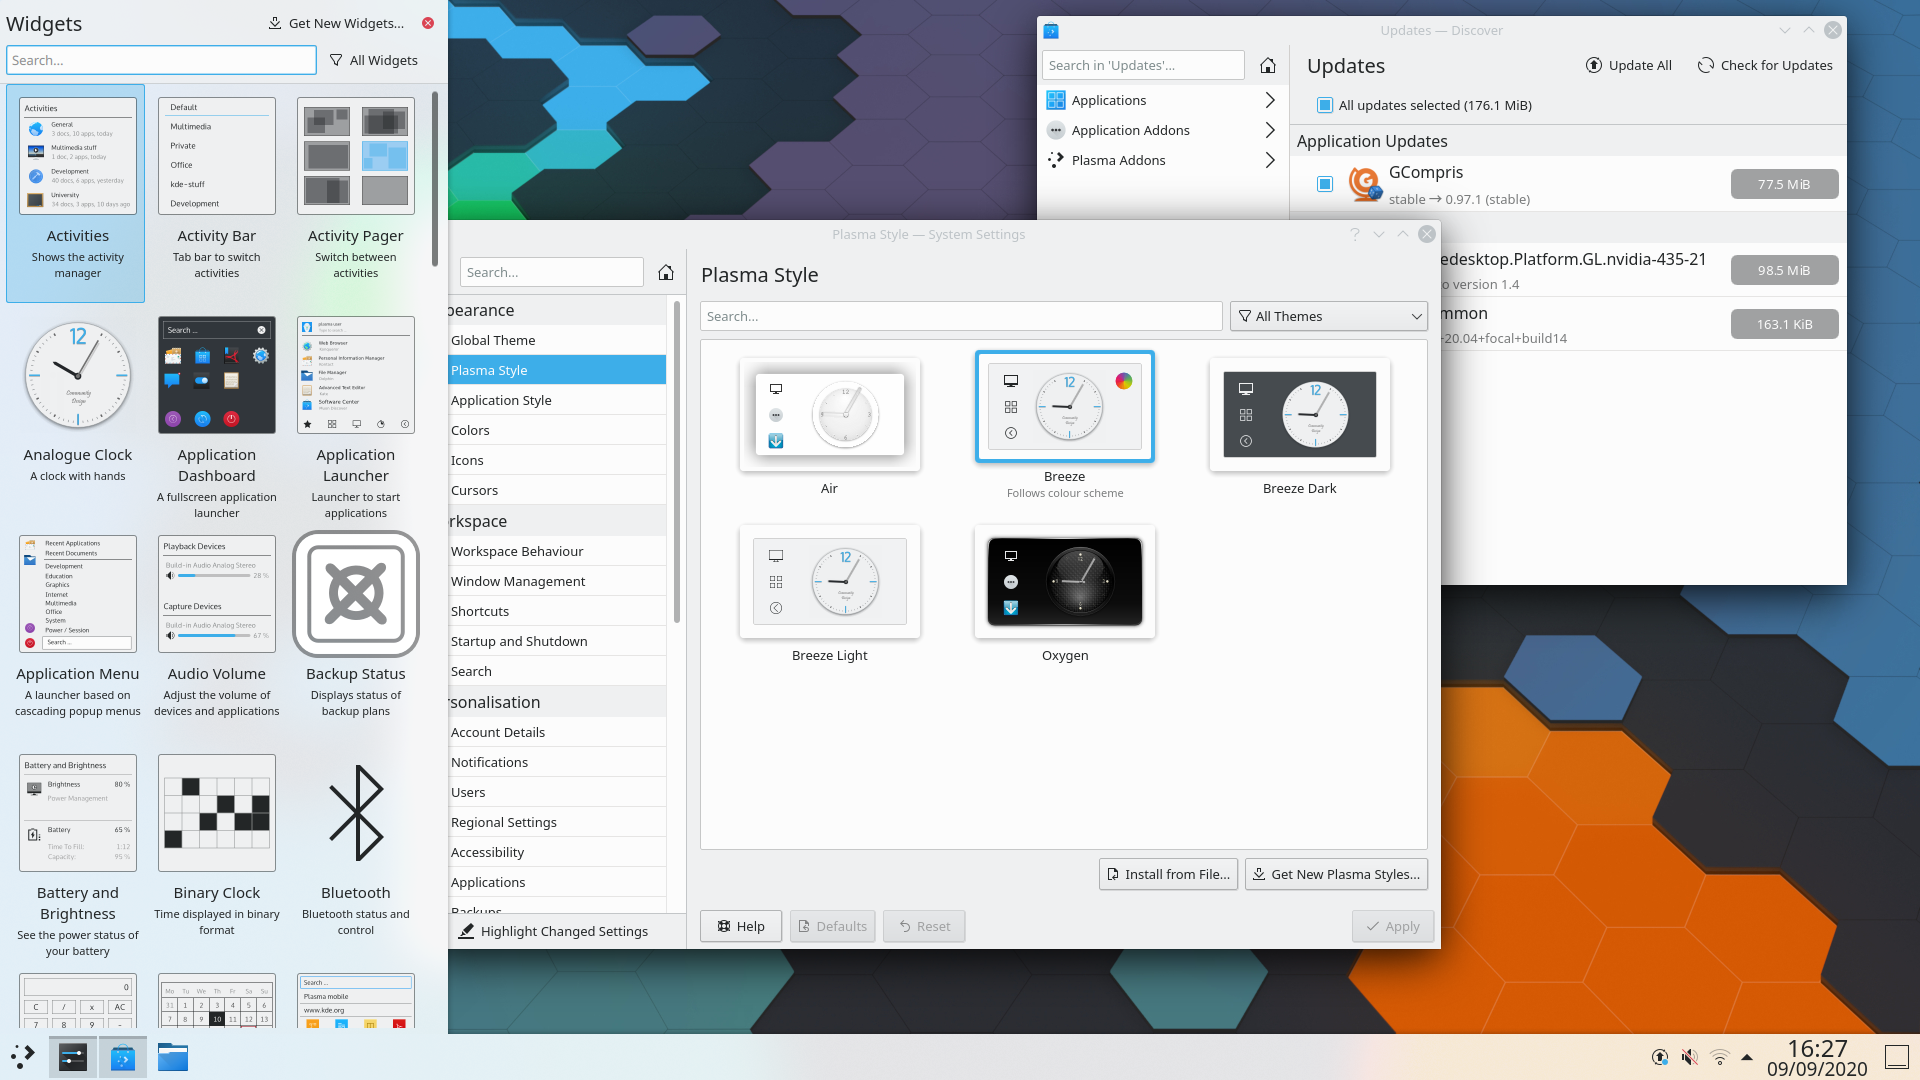 KDE Plasma 5